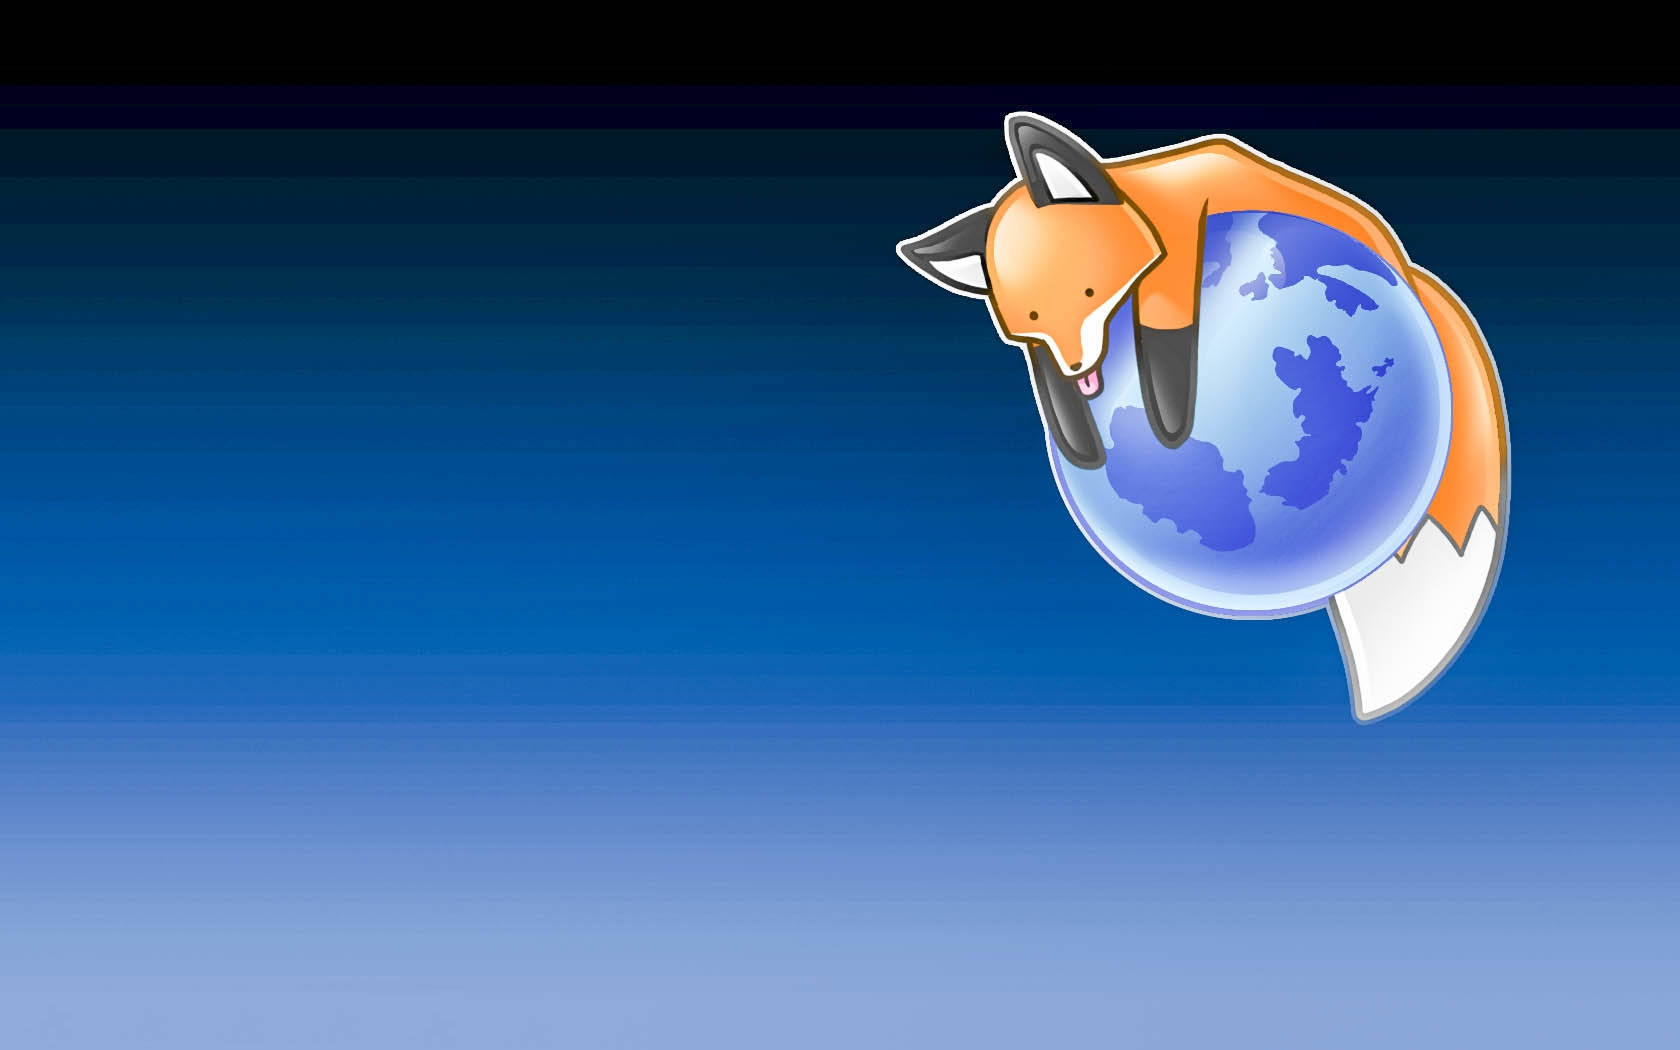 Firefox Browser Poster Wallpaper